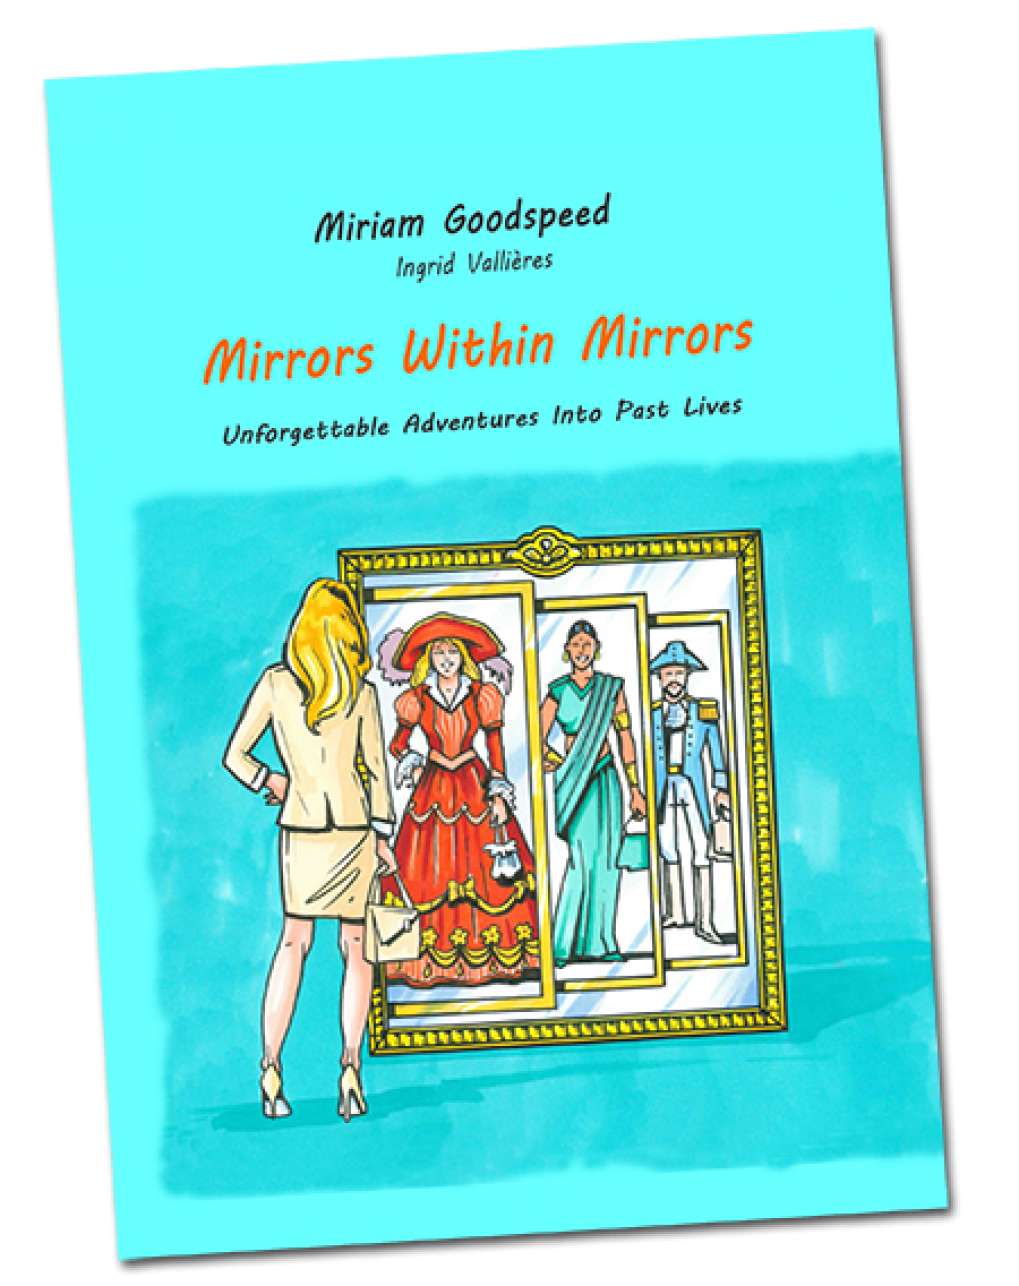 Neue englische Buchveröffentlichung "Mirrors Within Mirrors"